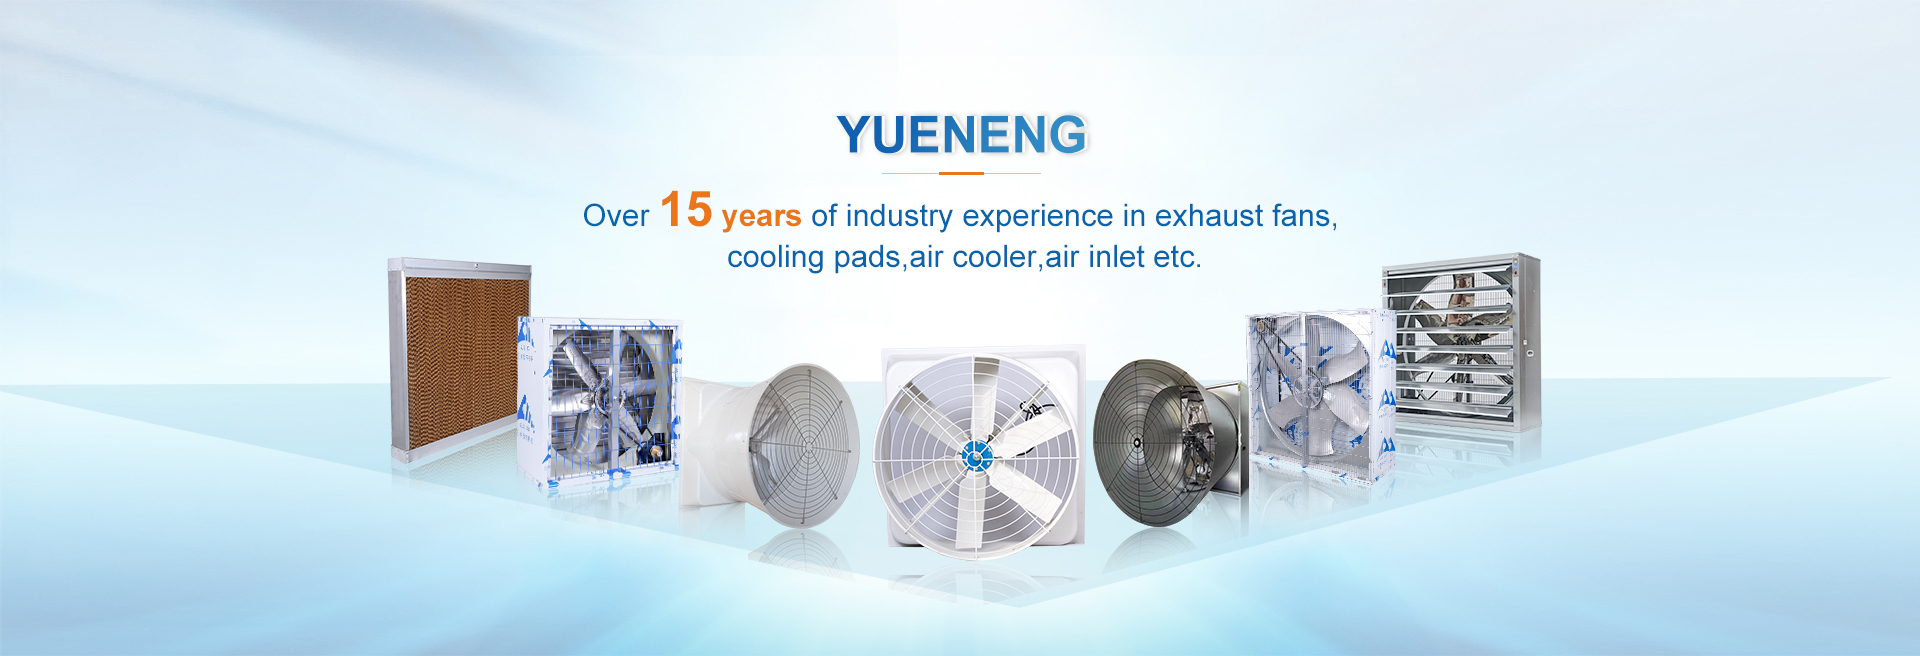 Equipamento de purificação de poupança de energia Co. de Nantong Yueneng, Ltd